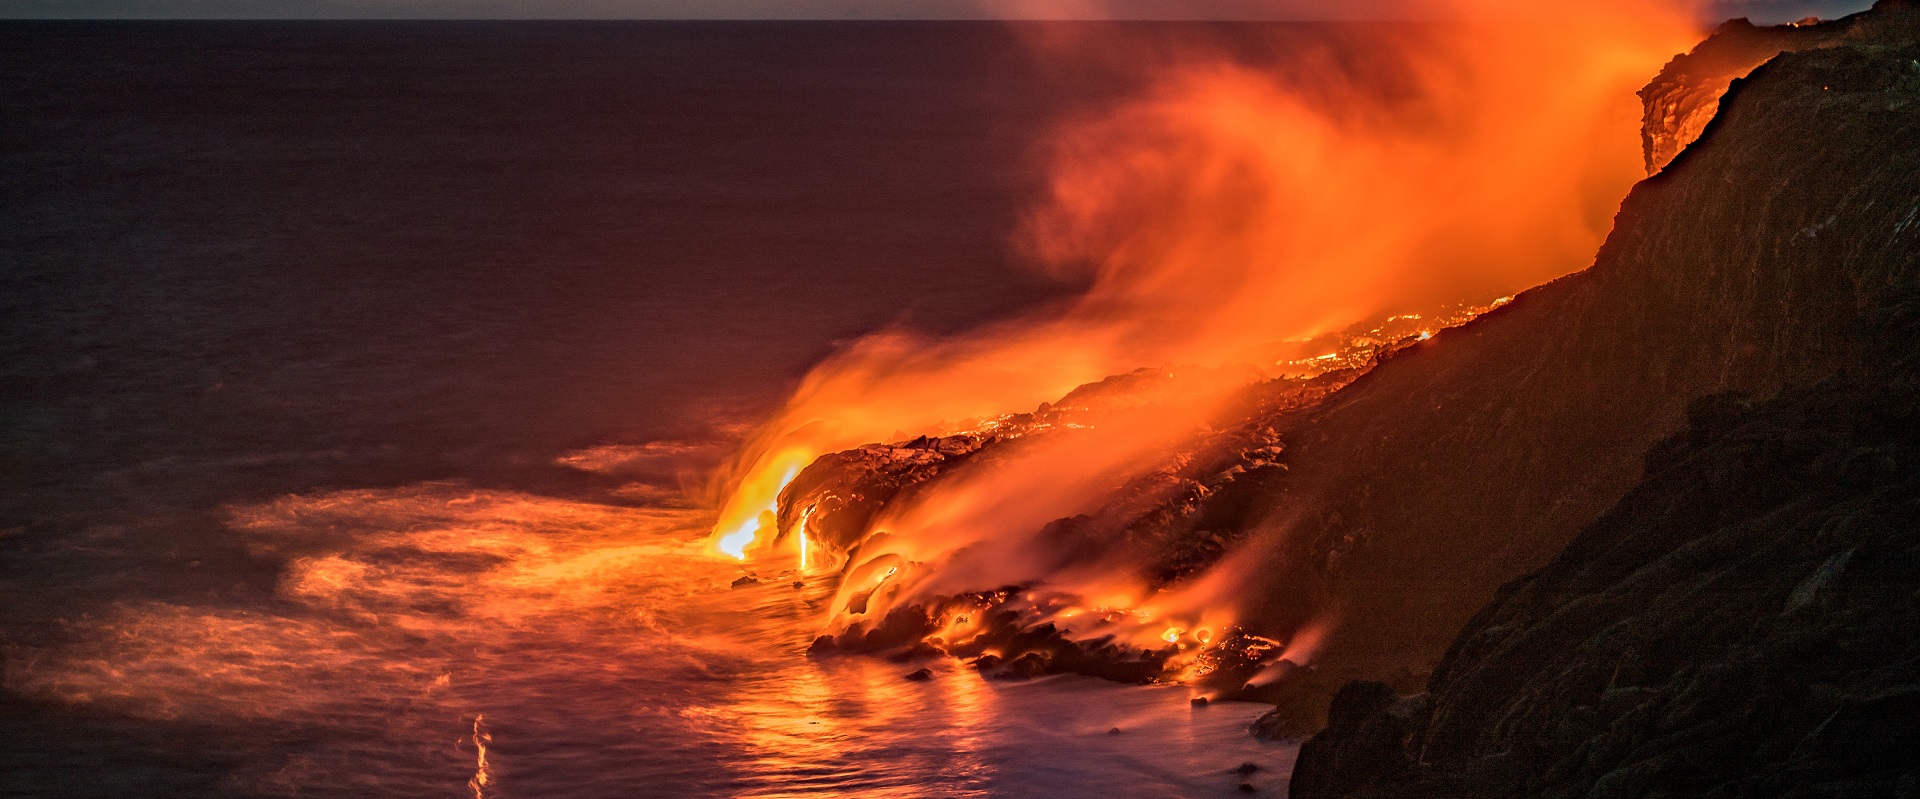 Hawai'i Volcanoes National Park. Image: iStock